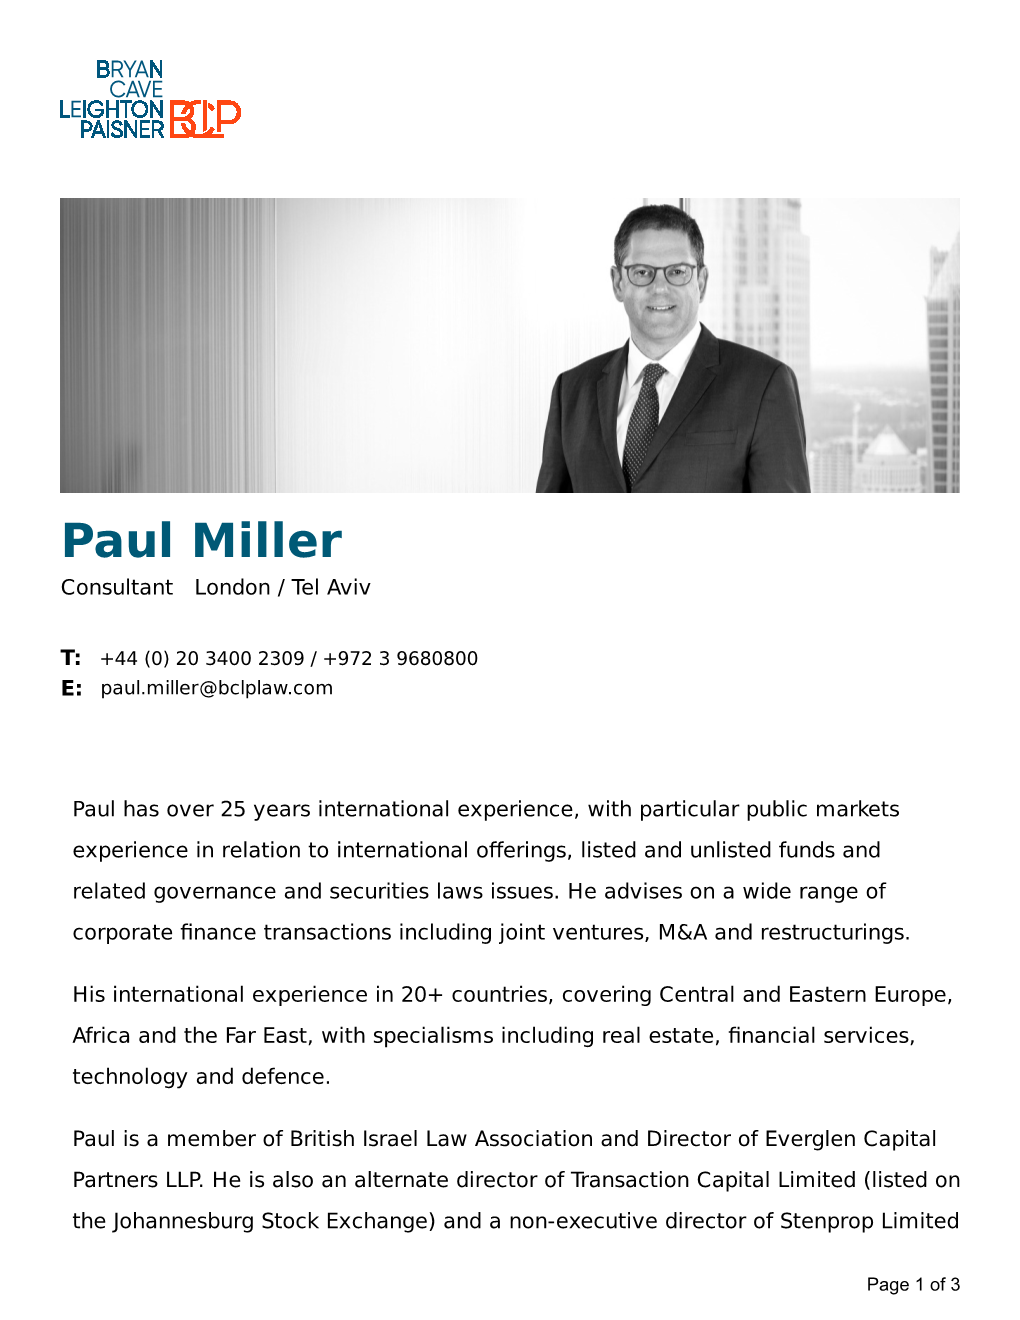 Paul Miller Consultant London / Tel Aviv